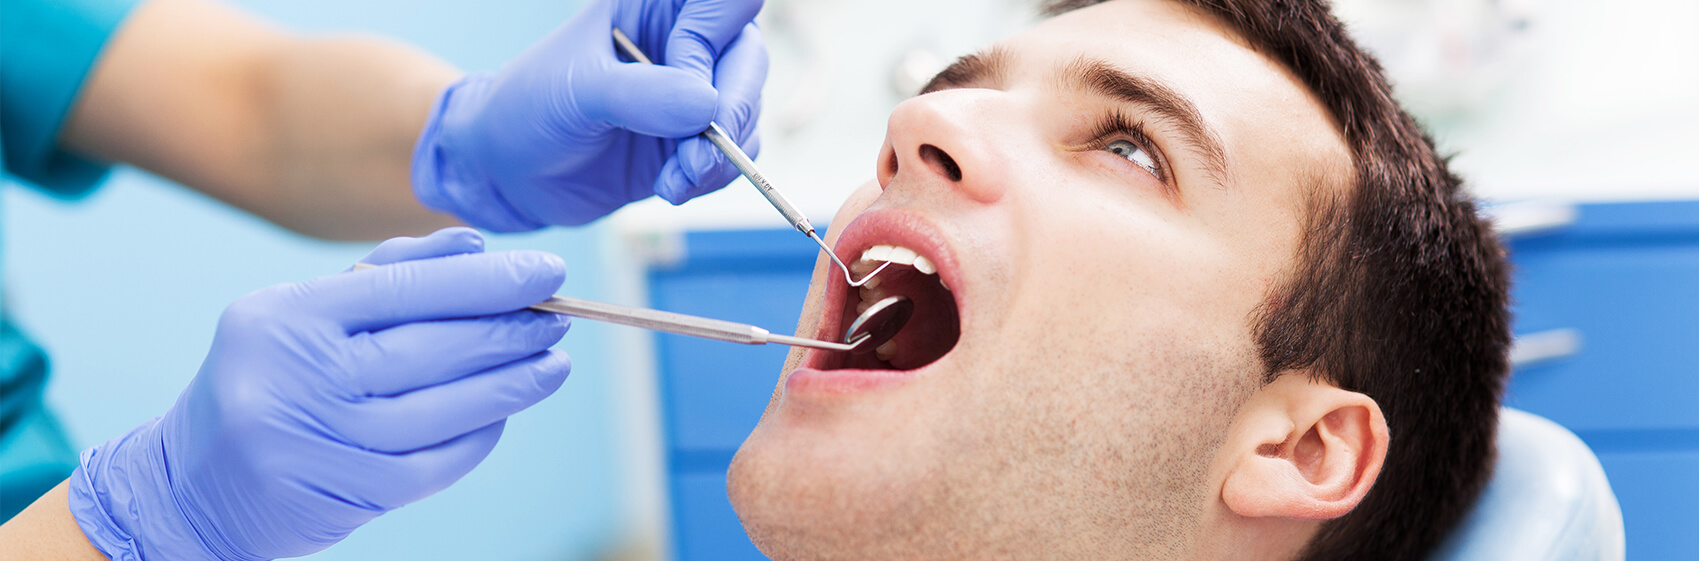 Man getting a dental exam